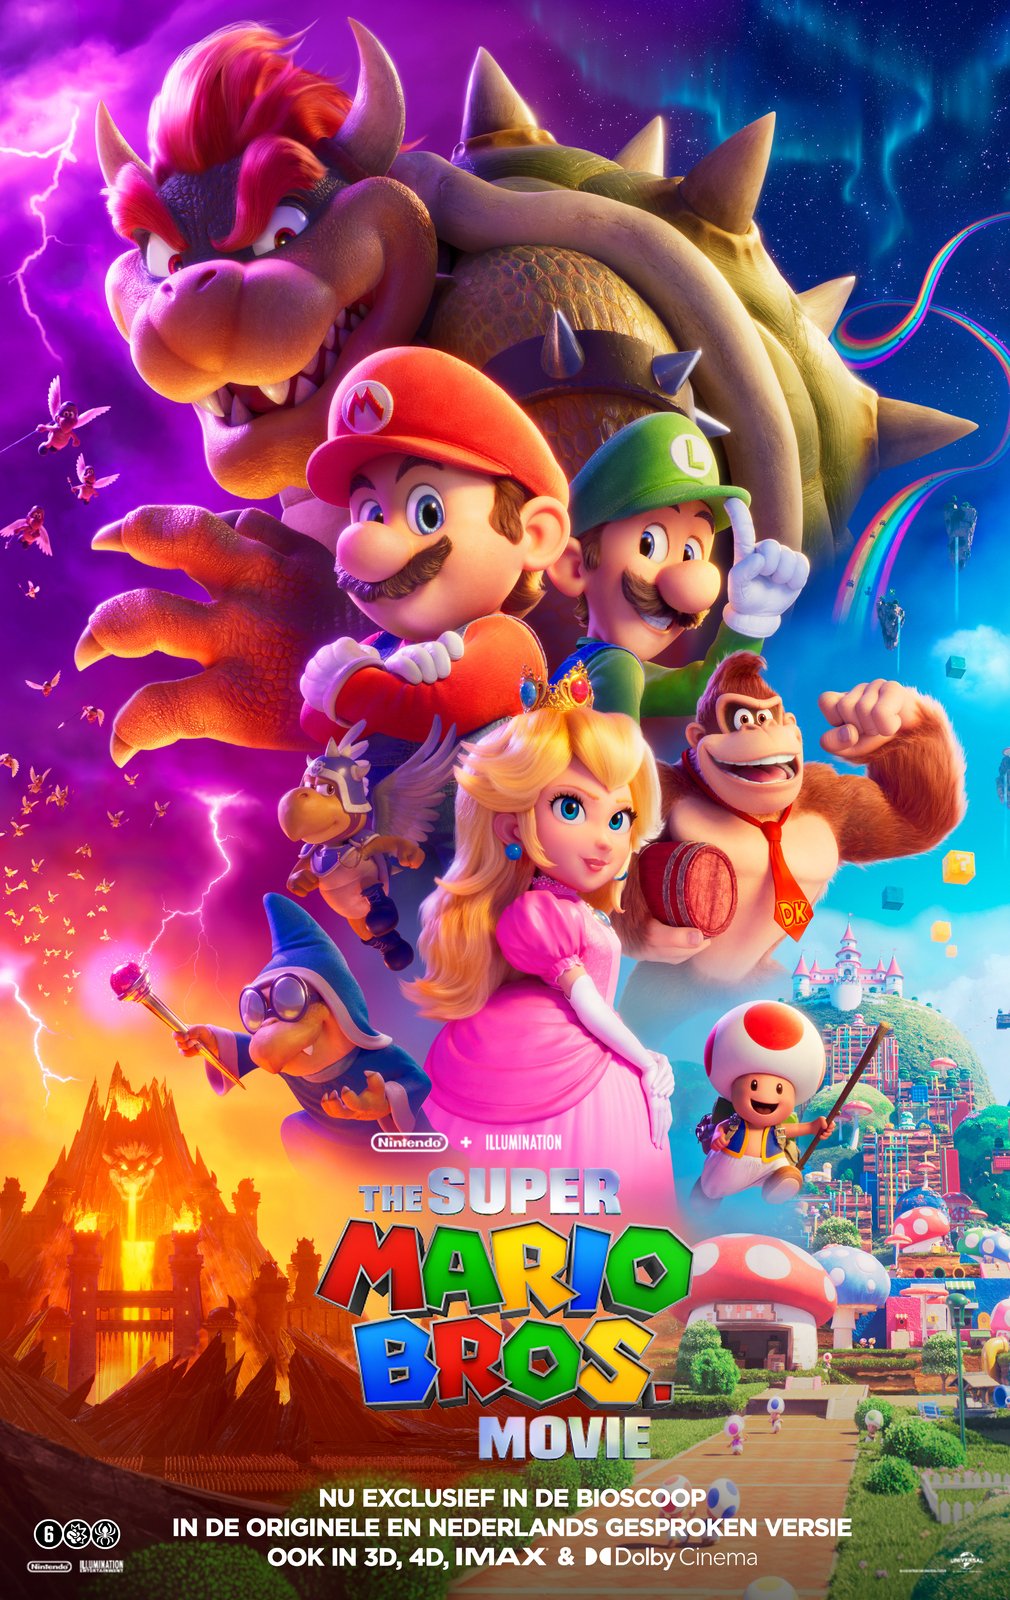 The Super Mario Bros. Movie (2D NL)